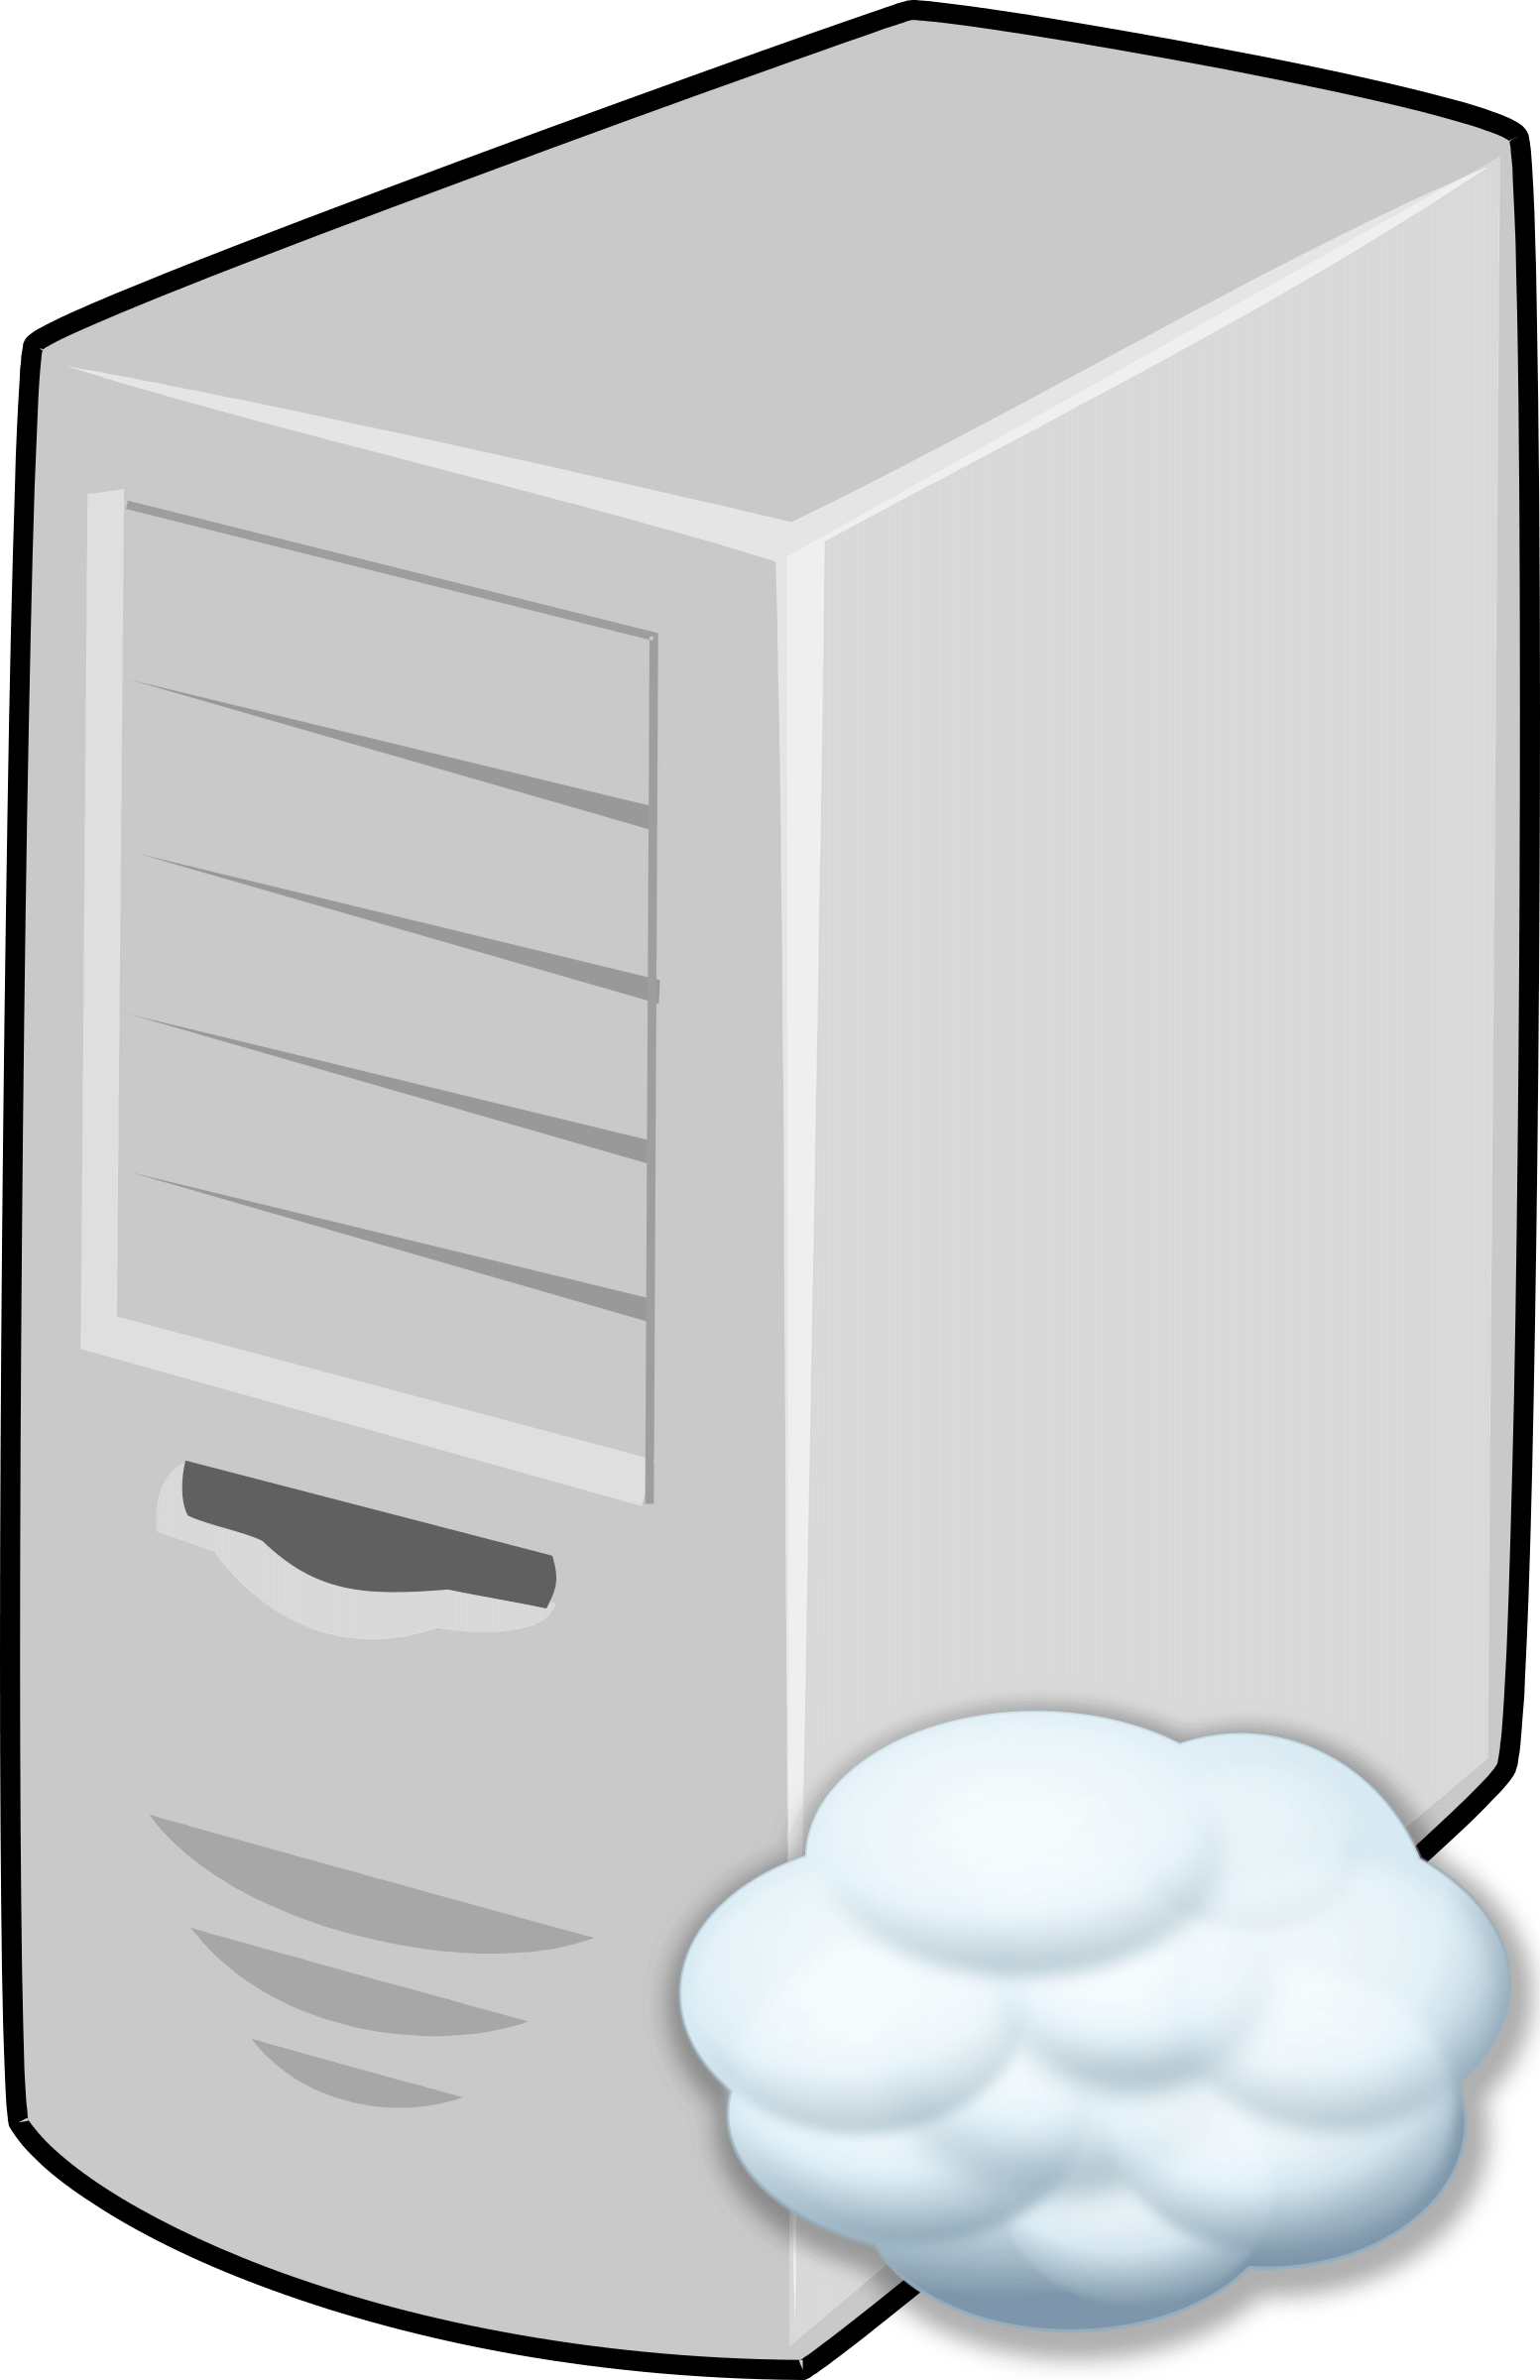 Cloud Server Cliparts